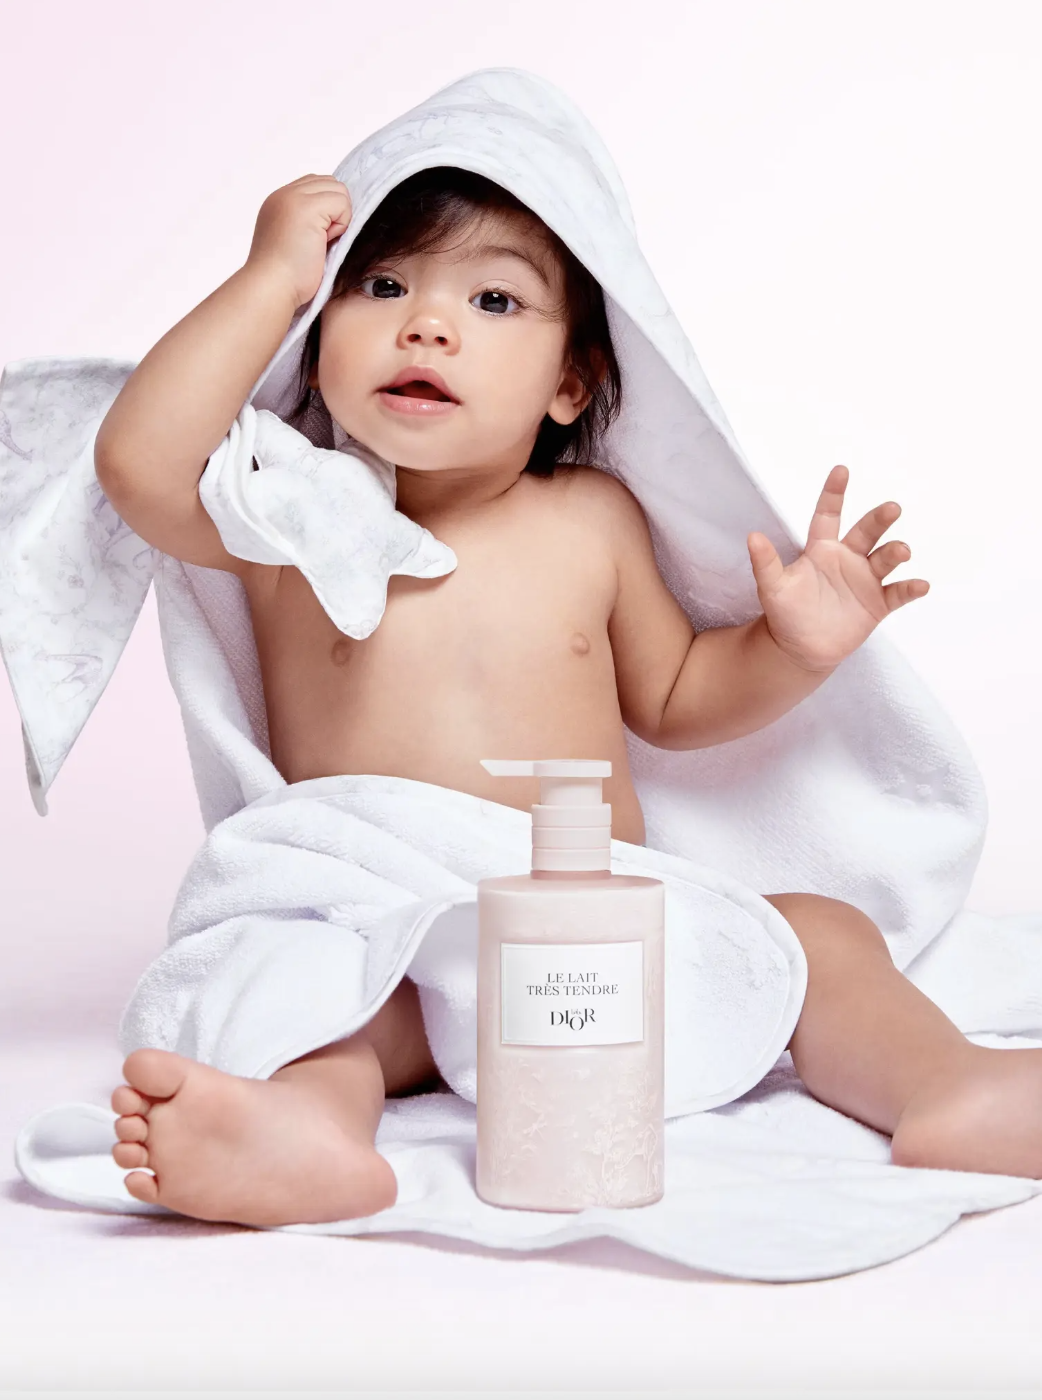 Tranh cãi xung quanh dòng sản phẩm dưỡng da cho trẻ sơ sinh của Dior - Ảnh 1.